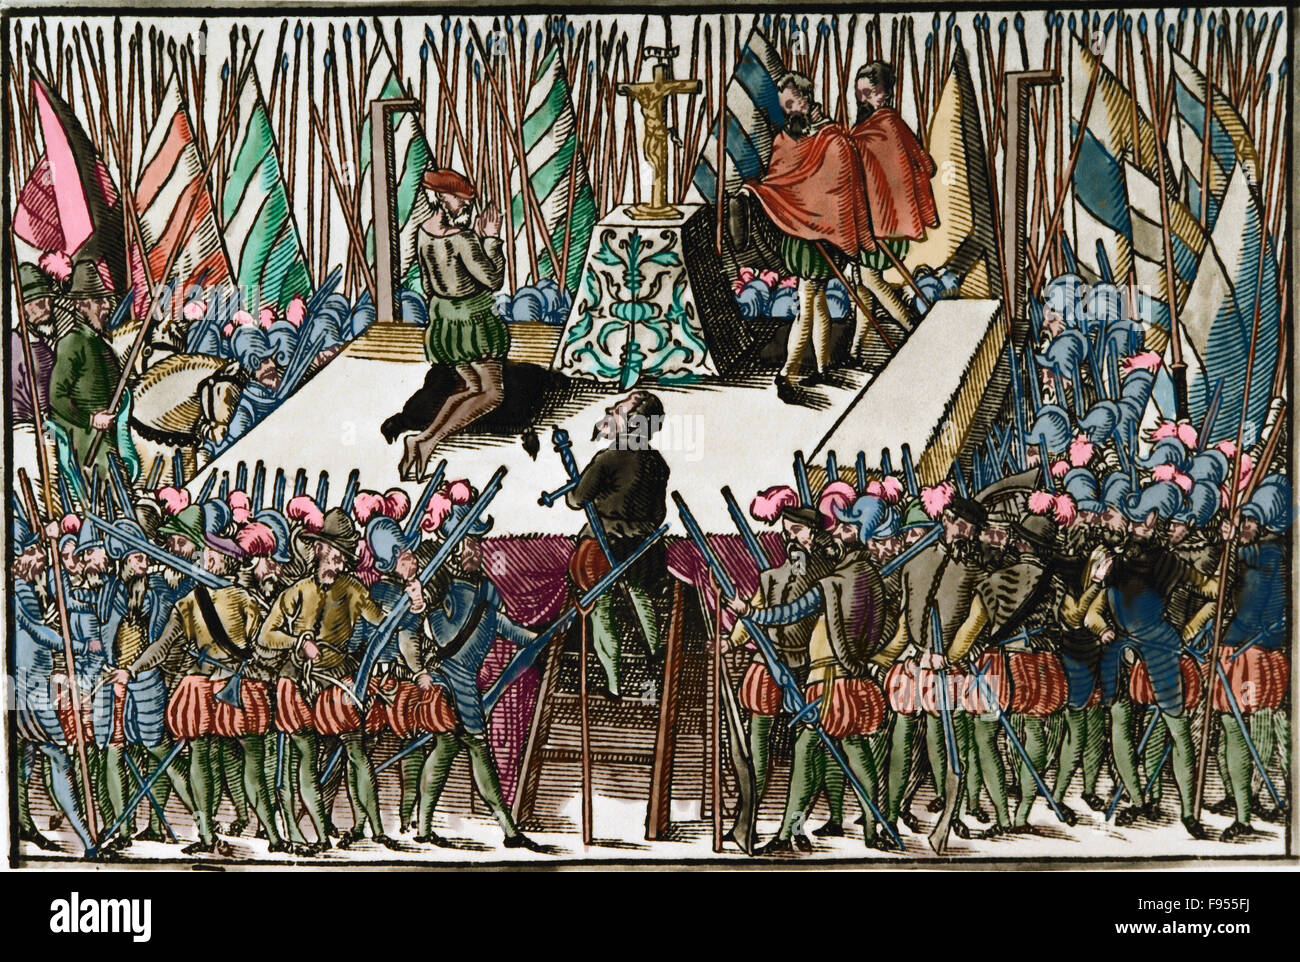 Quatre-vingts ans ou néerlandais d'indépendance 1568-1648. L'exécution des Comtes d'Egmond et Hoorn, Bruxelles, 1568. Aux Pays-Bas. La gravure. De couleur. Banque D'Images